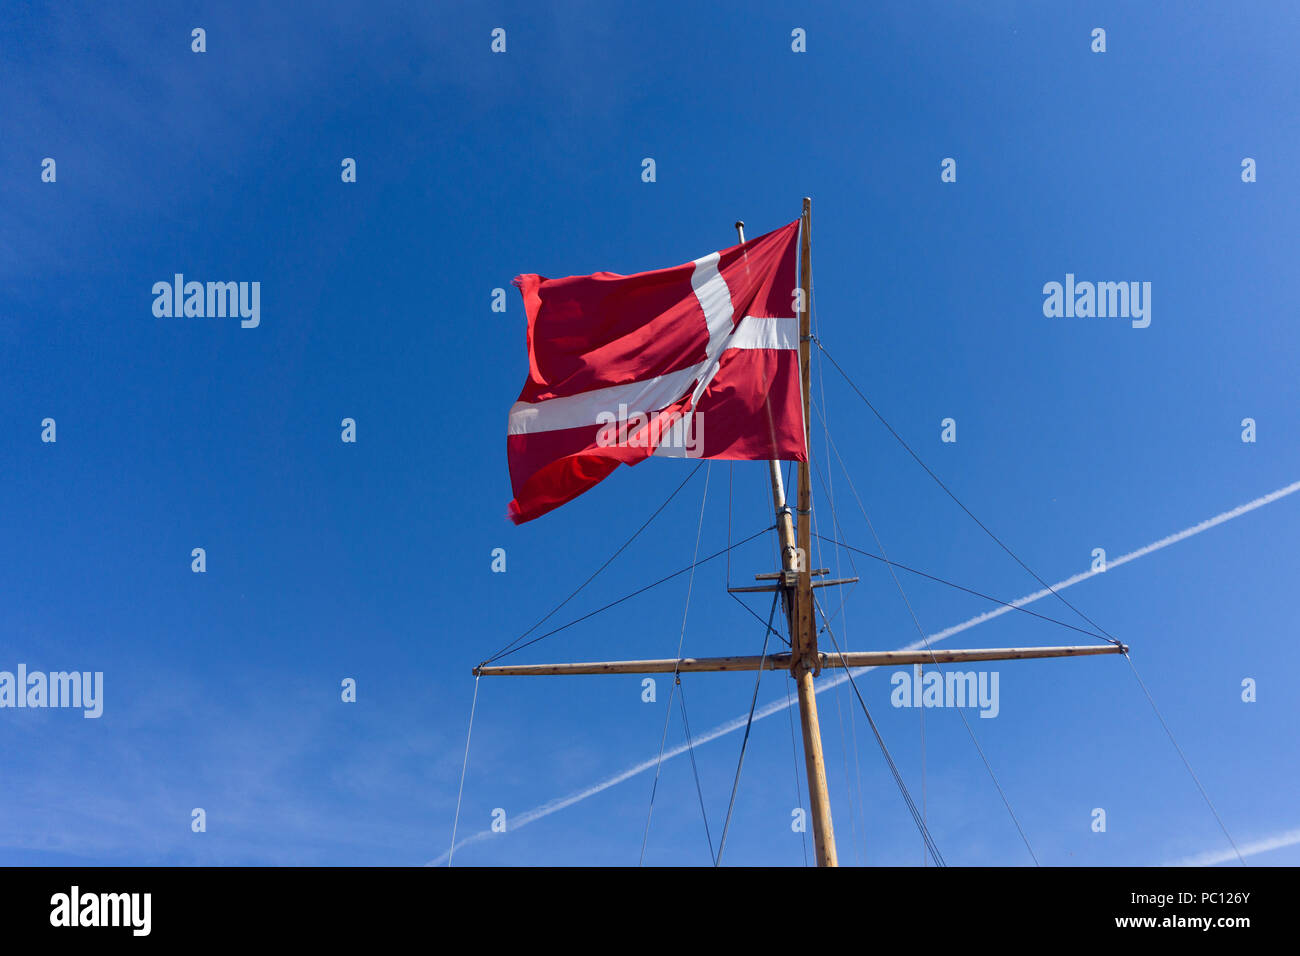 Denmark flag on a ship mast waivng against a clear blue sky Stock Photo